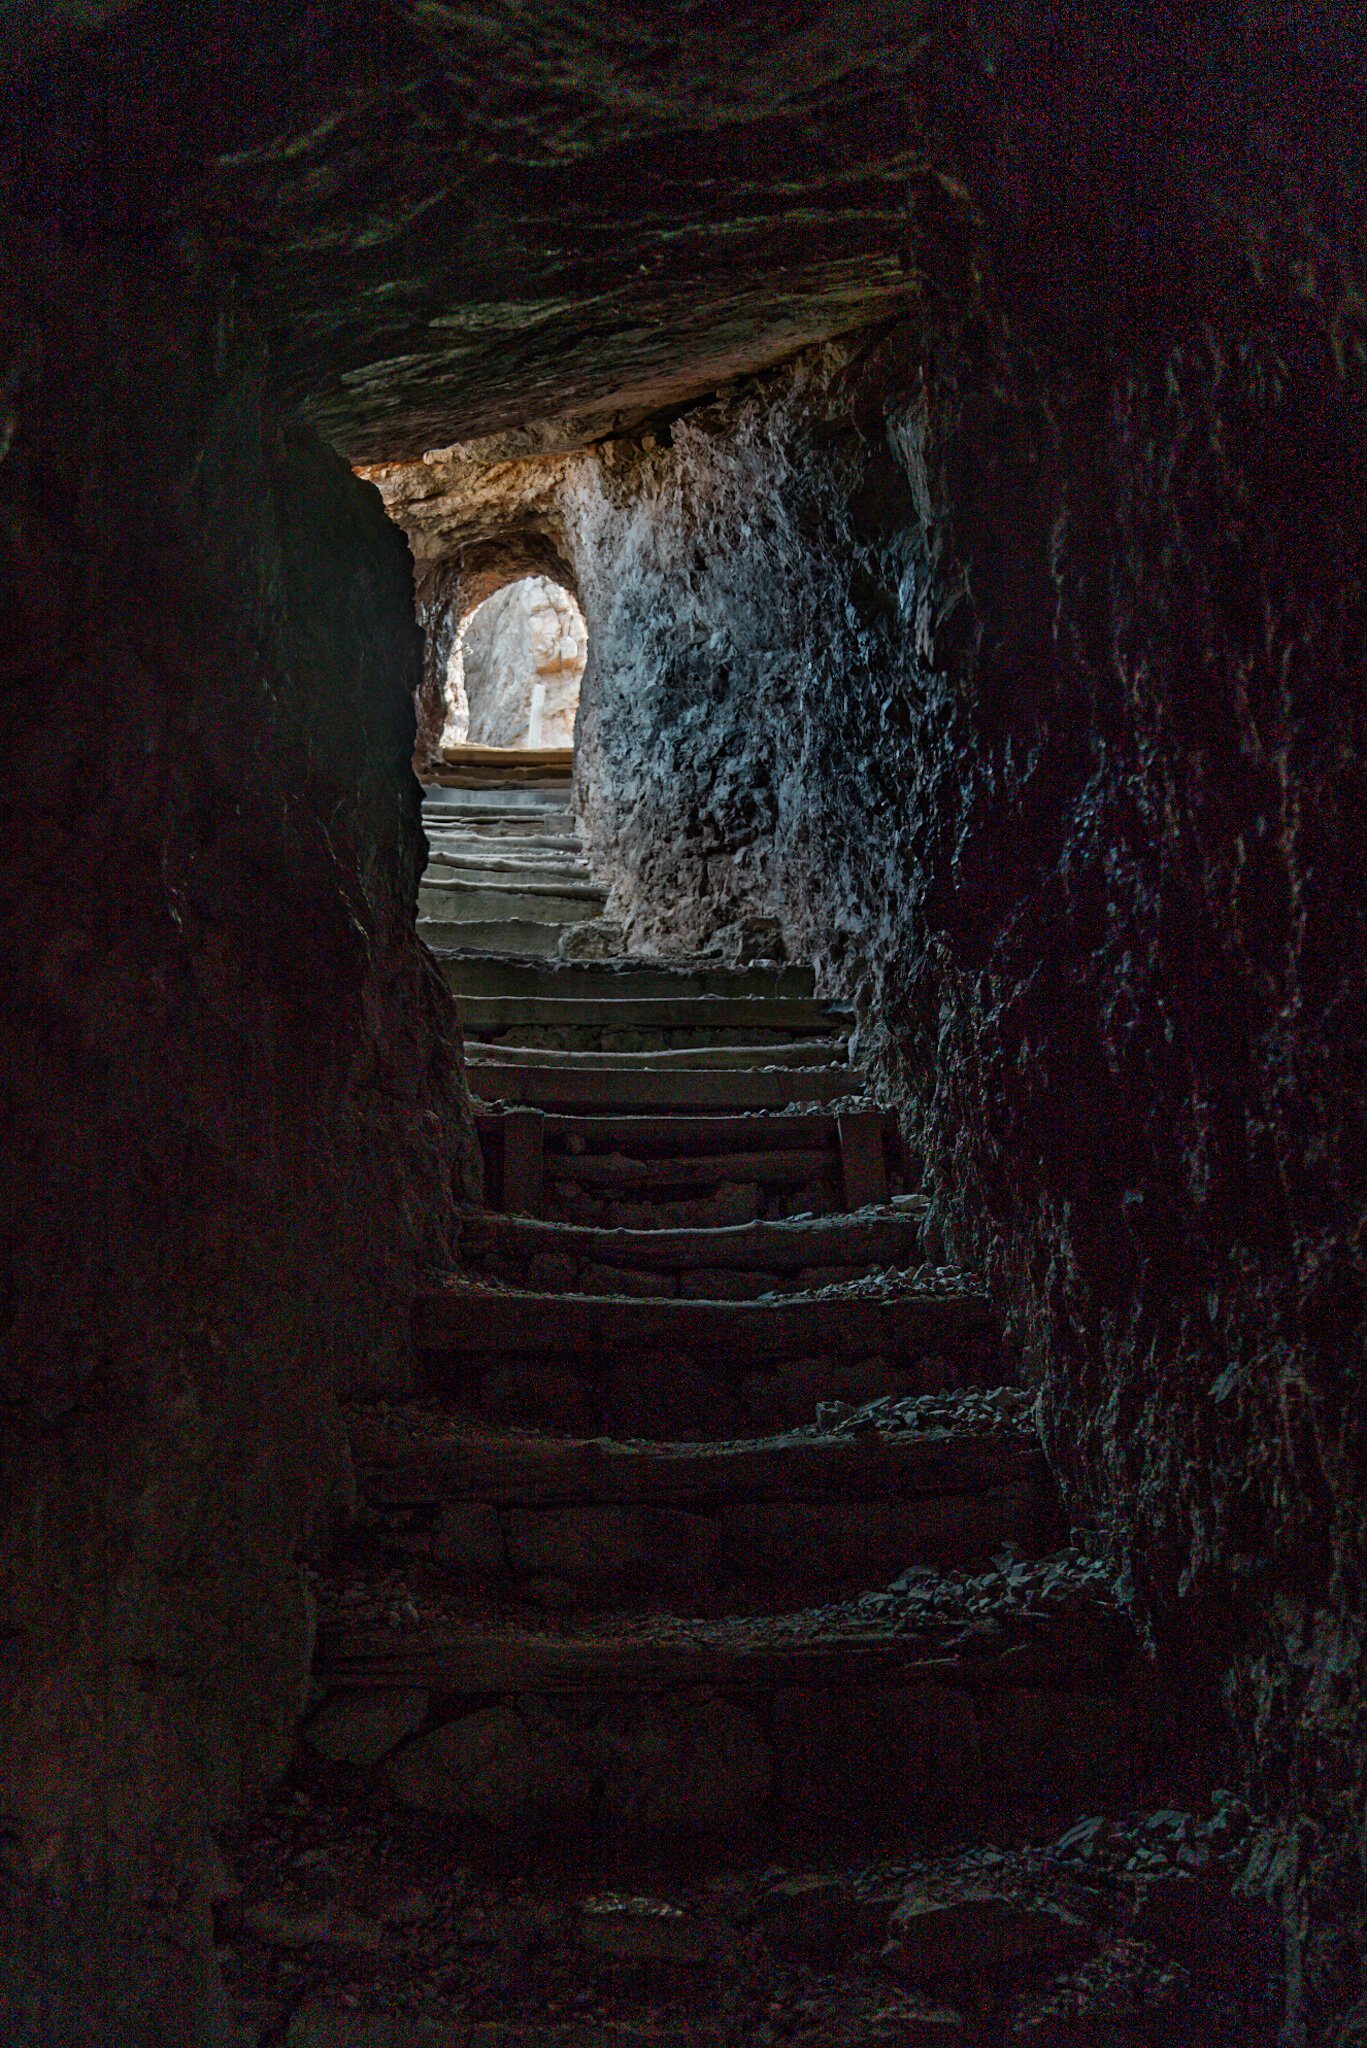 tunnels at Tre Cime di Lavaredo